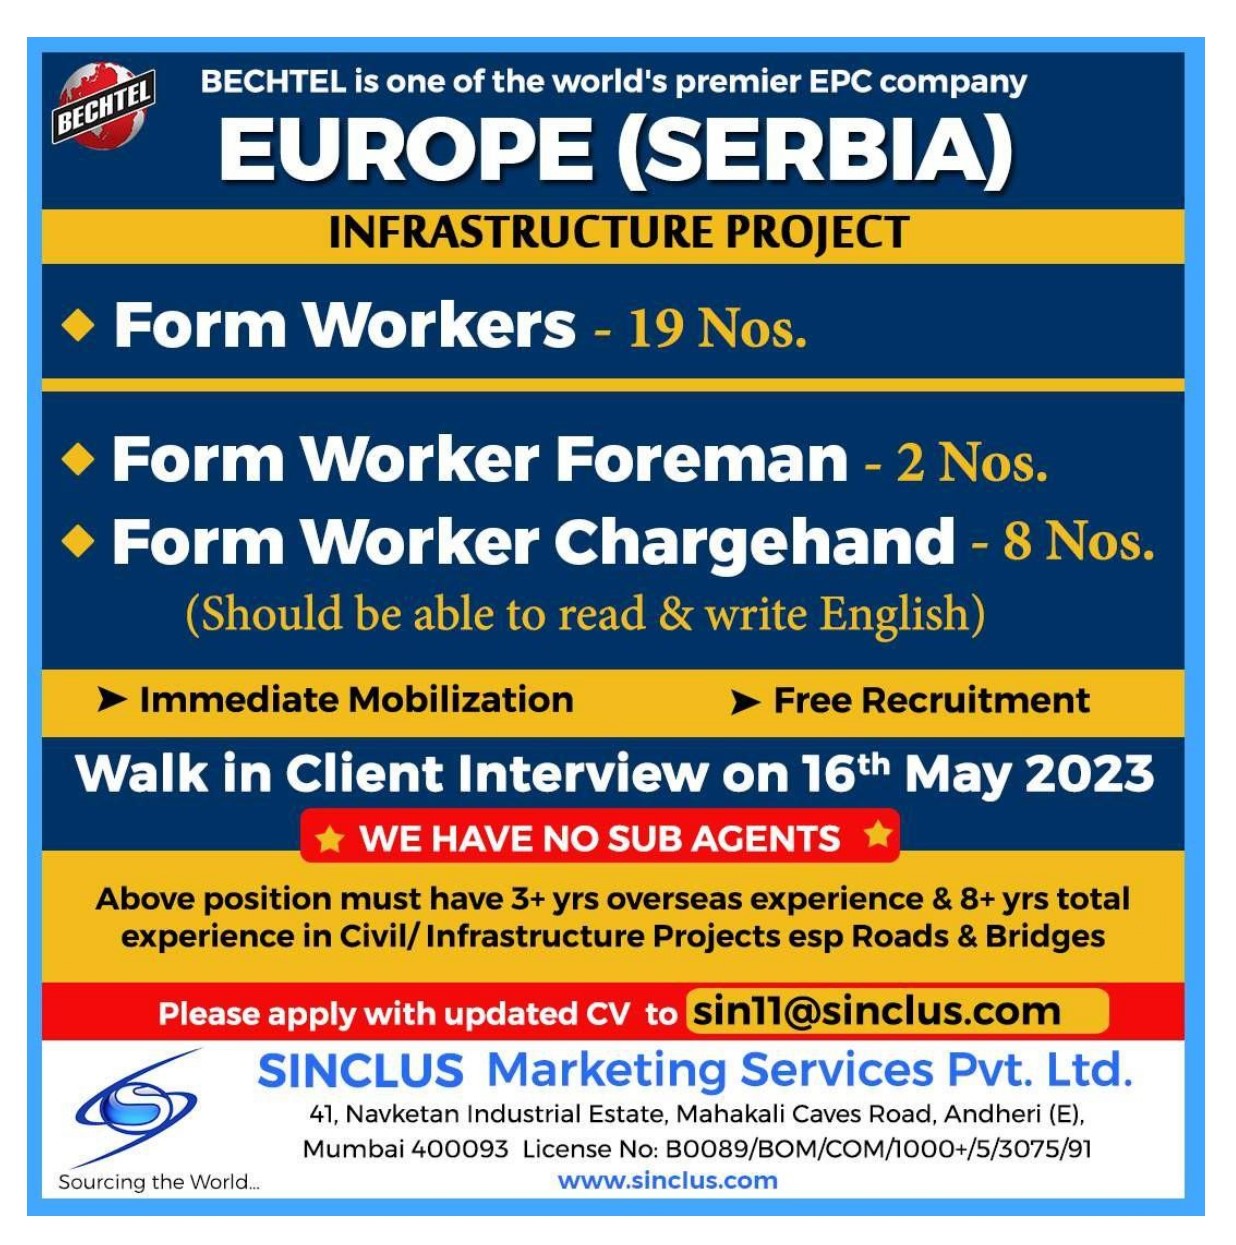 EPC Company Serbia, Europe